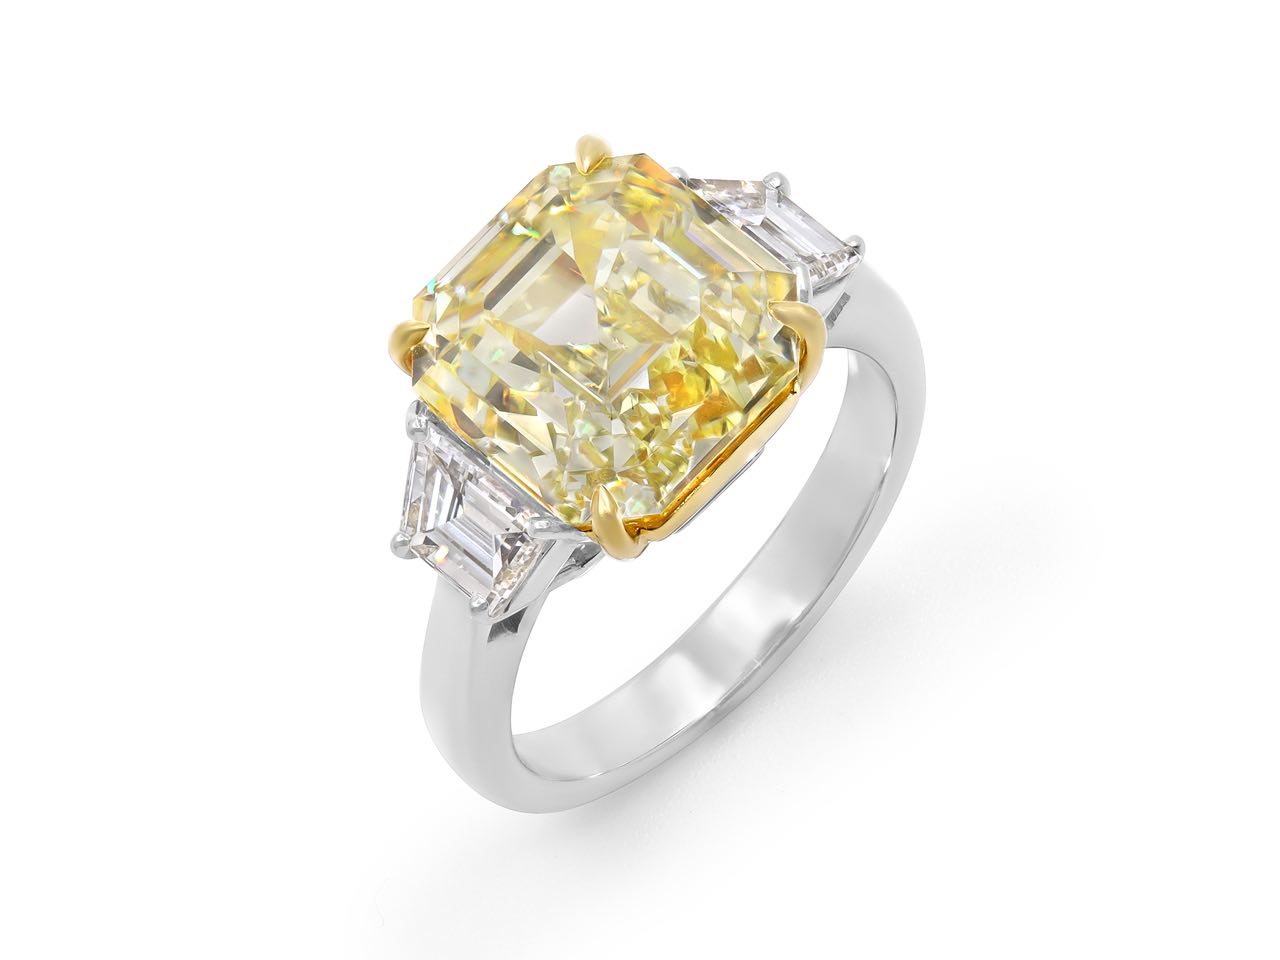 Asscher-Cut Fancy Intense Yellow Diamond Ring, 8.17 Carats, in Platinum